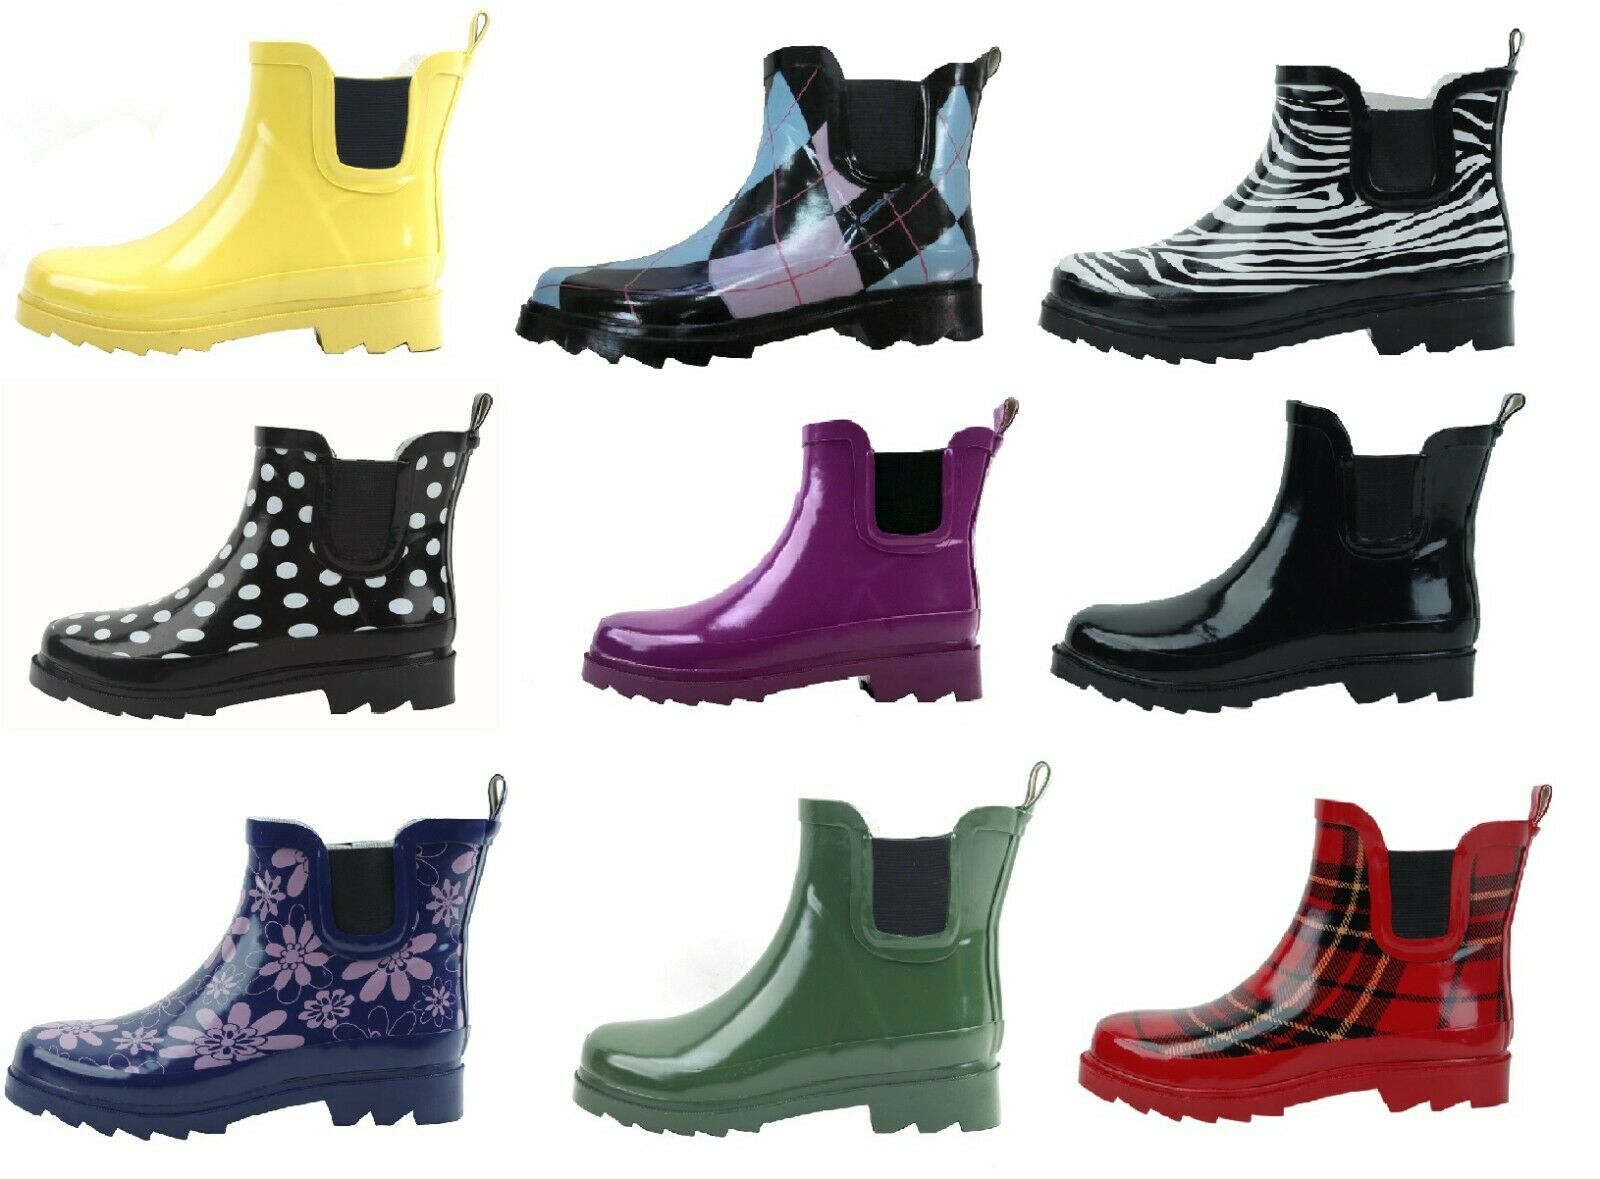 New Women's Waterproof Short Ankle Rubber Rain Boots